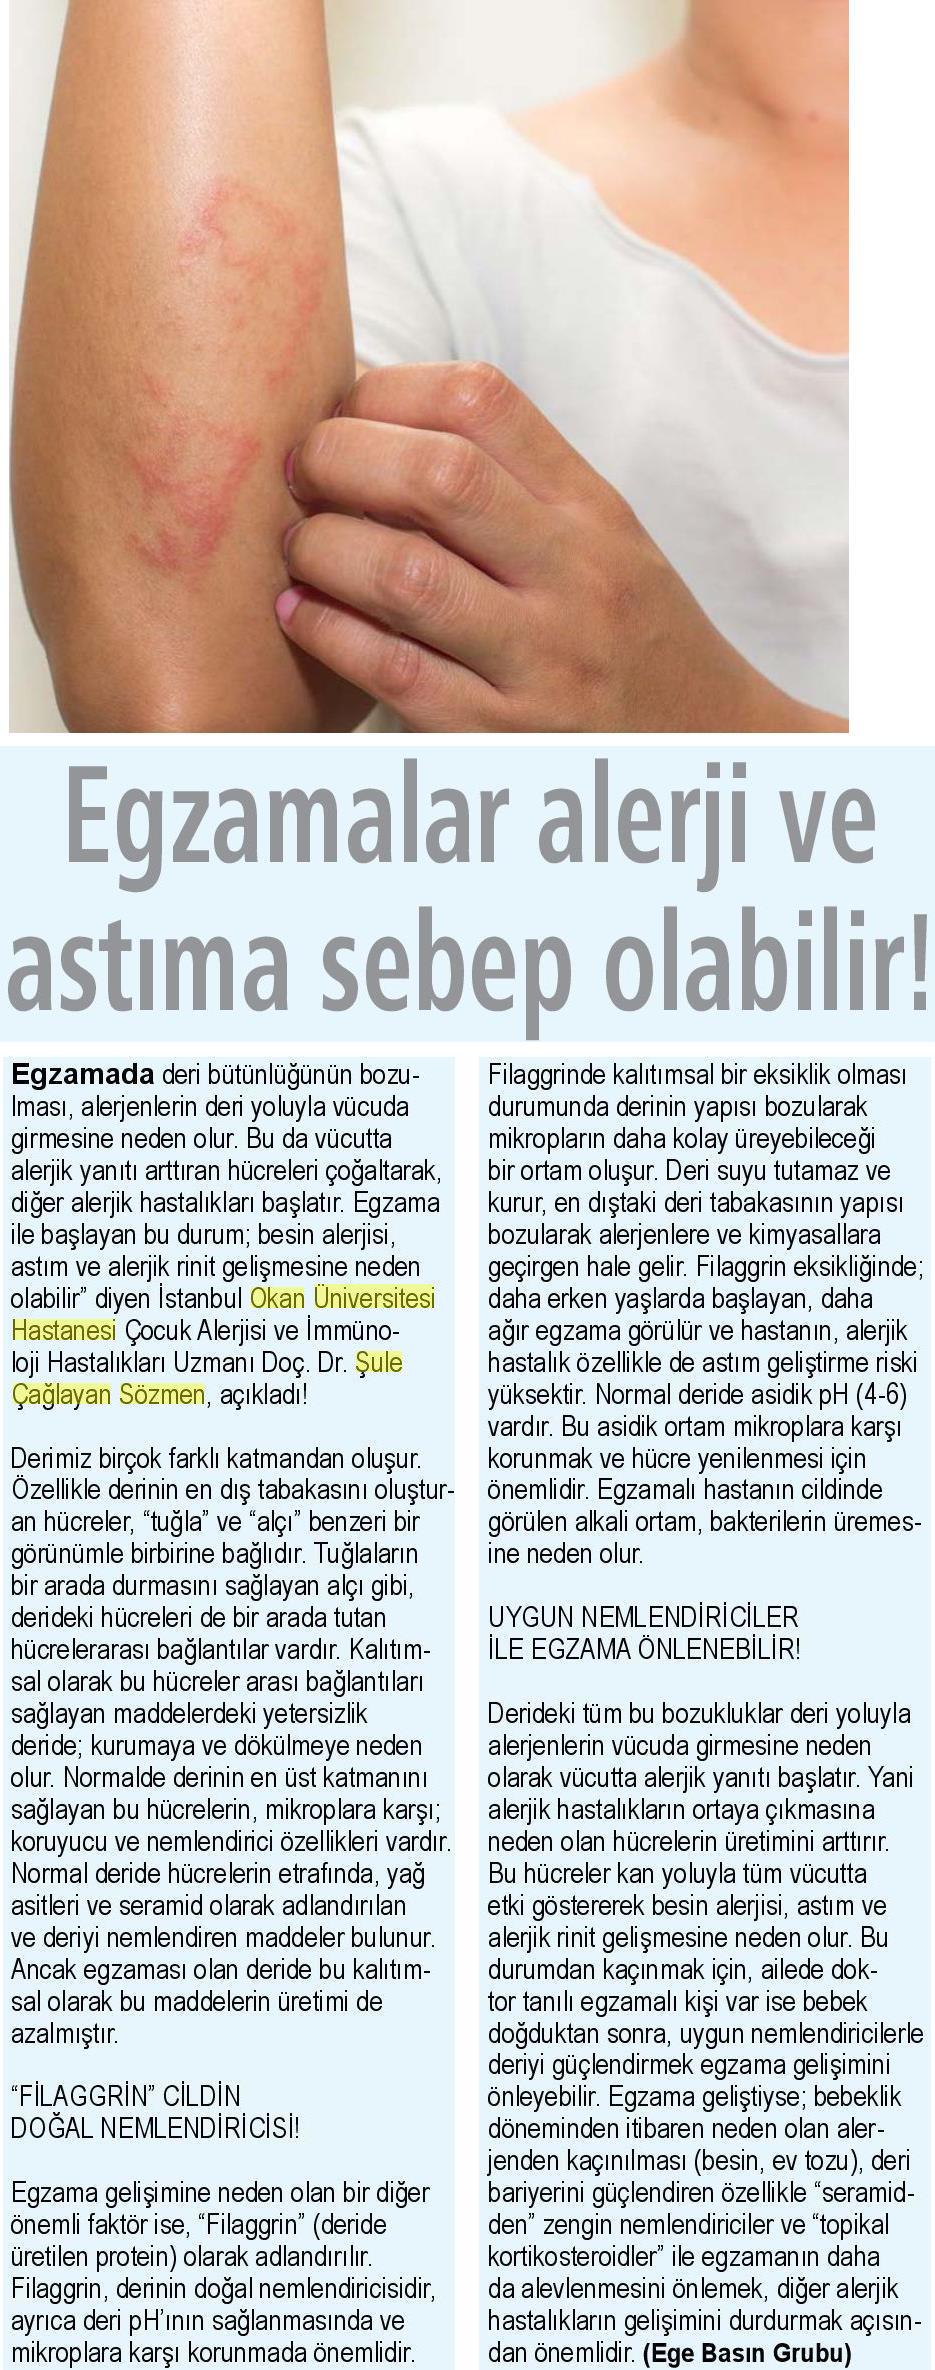 06.04.2019 Sağlık Gazetesi EGZAMALAR ALERJİ VE ASTIMA SEBEP OLABİLİR!